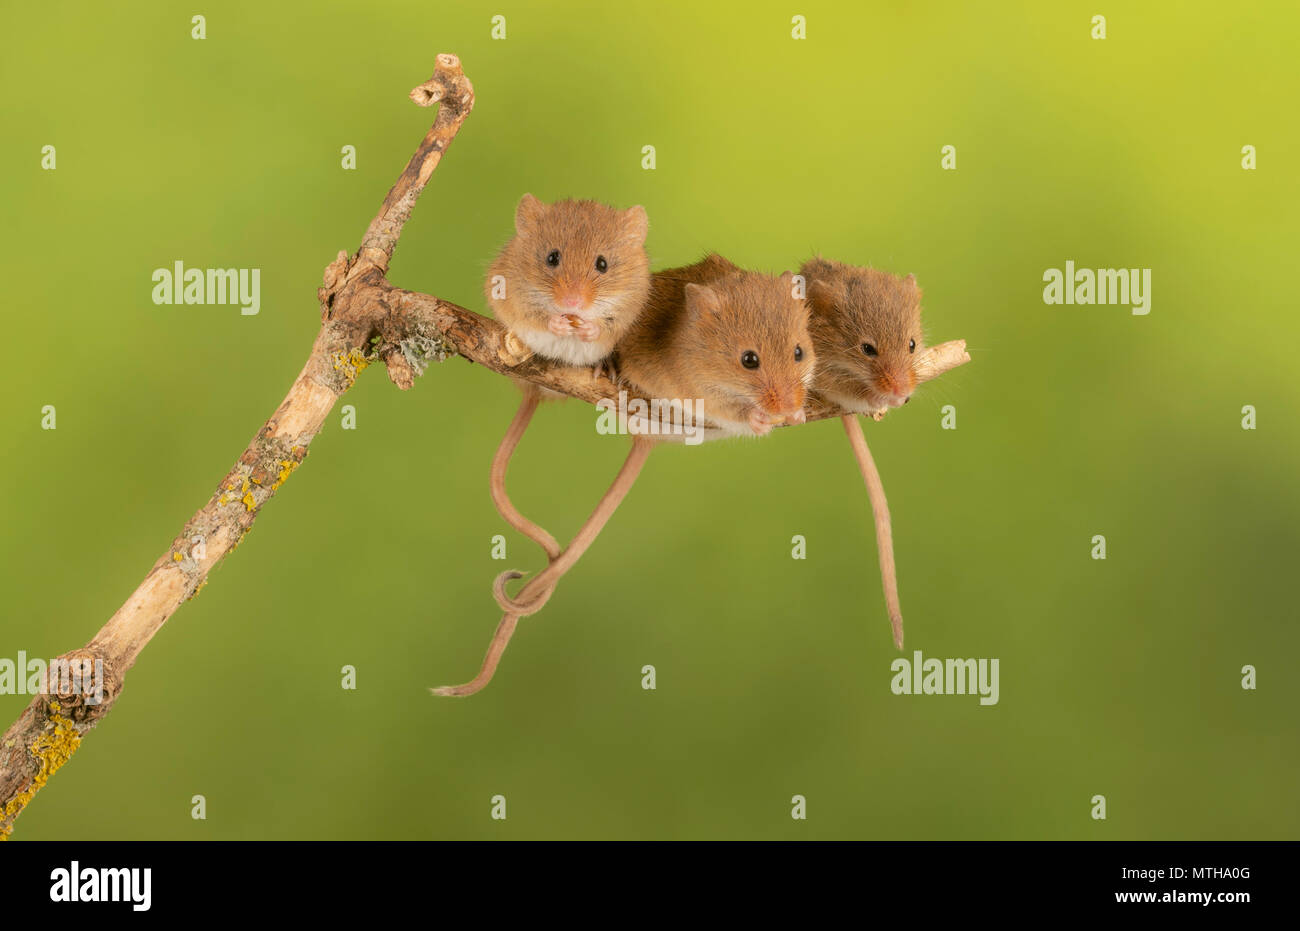 Trío de curar ratones cosecha sentado en una rama Foto de stock